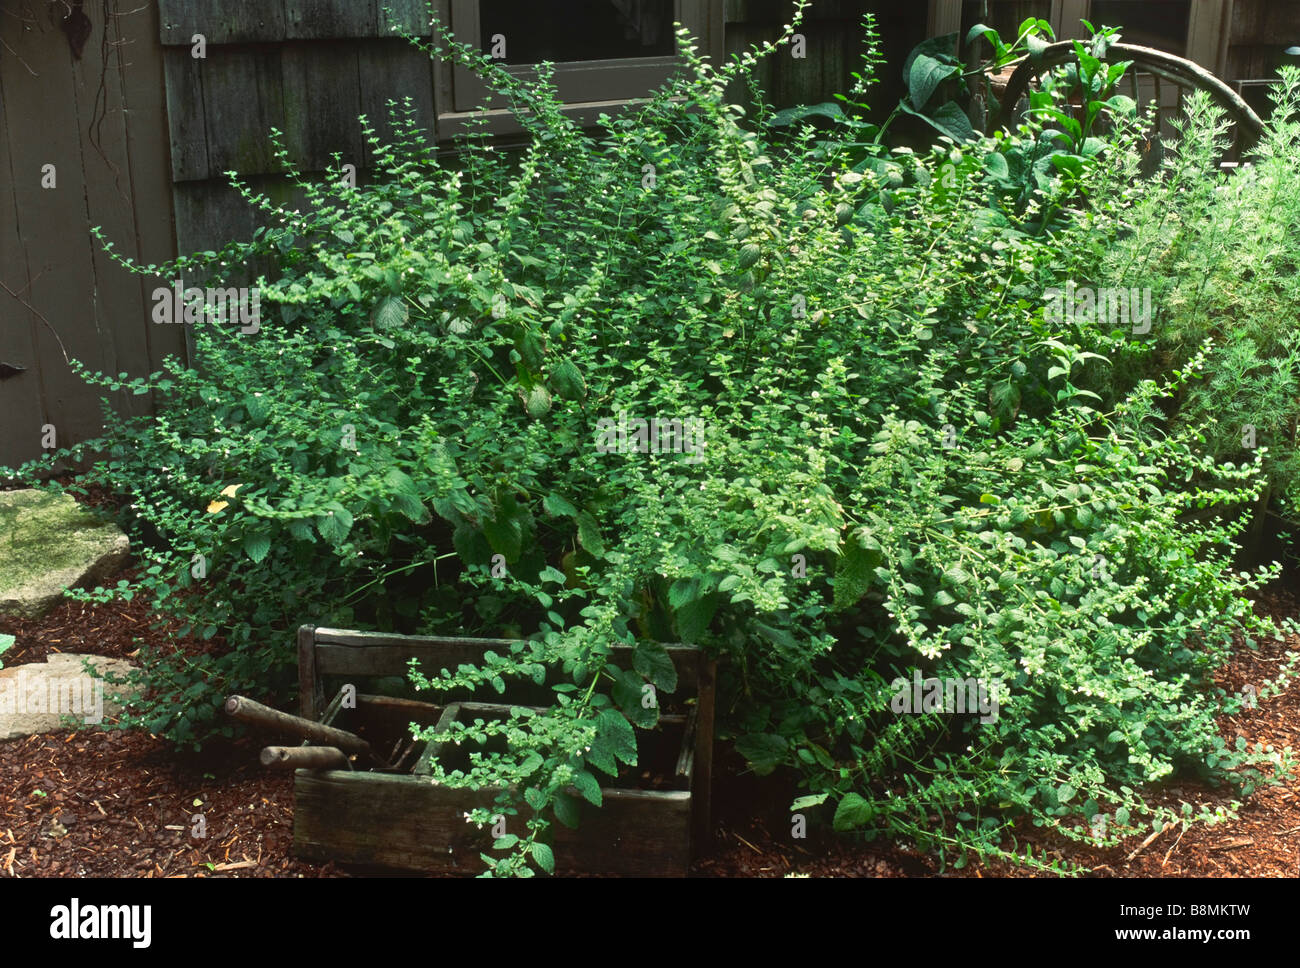 Melissa officinalis (lemon balm) growing in a garden. Stock Photo